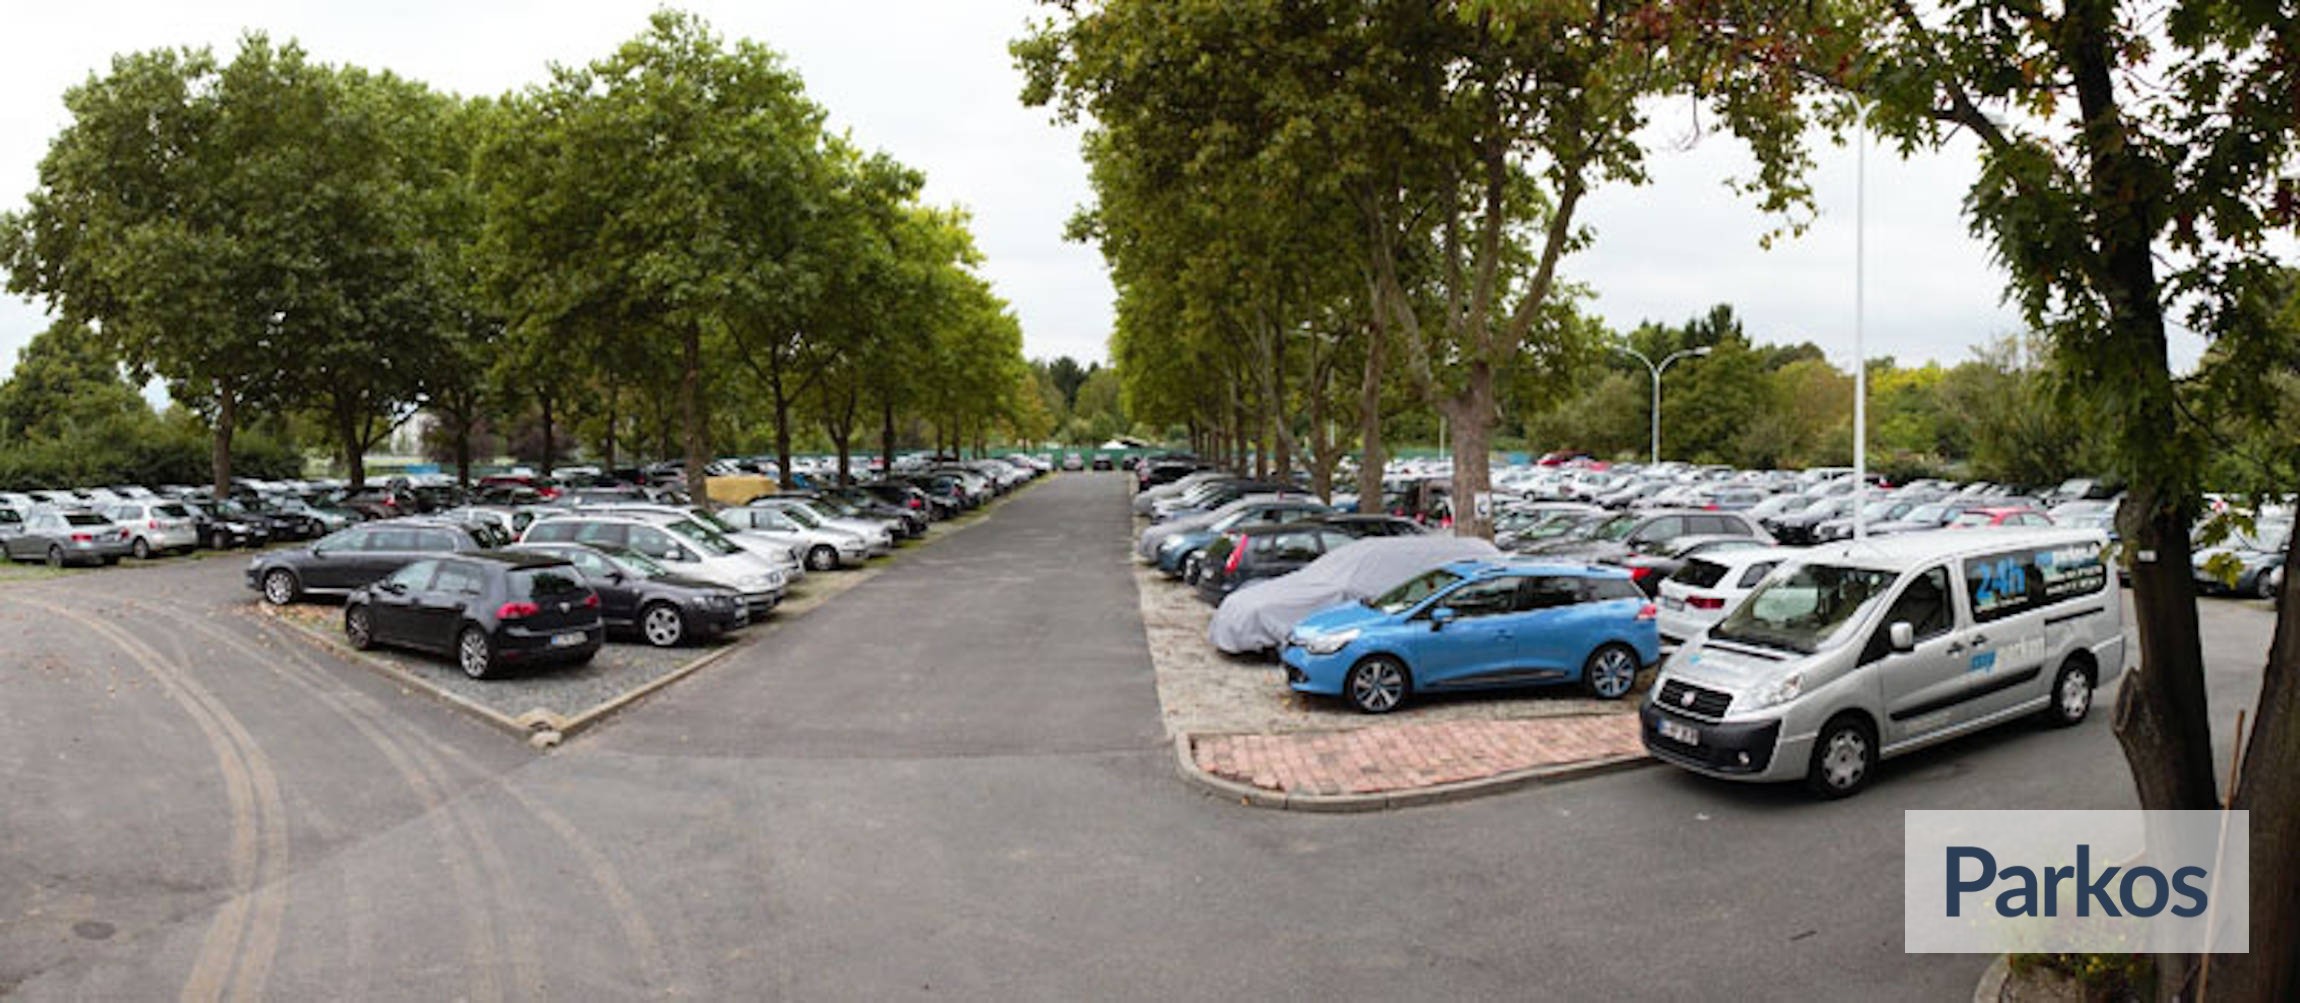 myparken - Parking Aéroport Francfort - picture 1